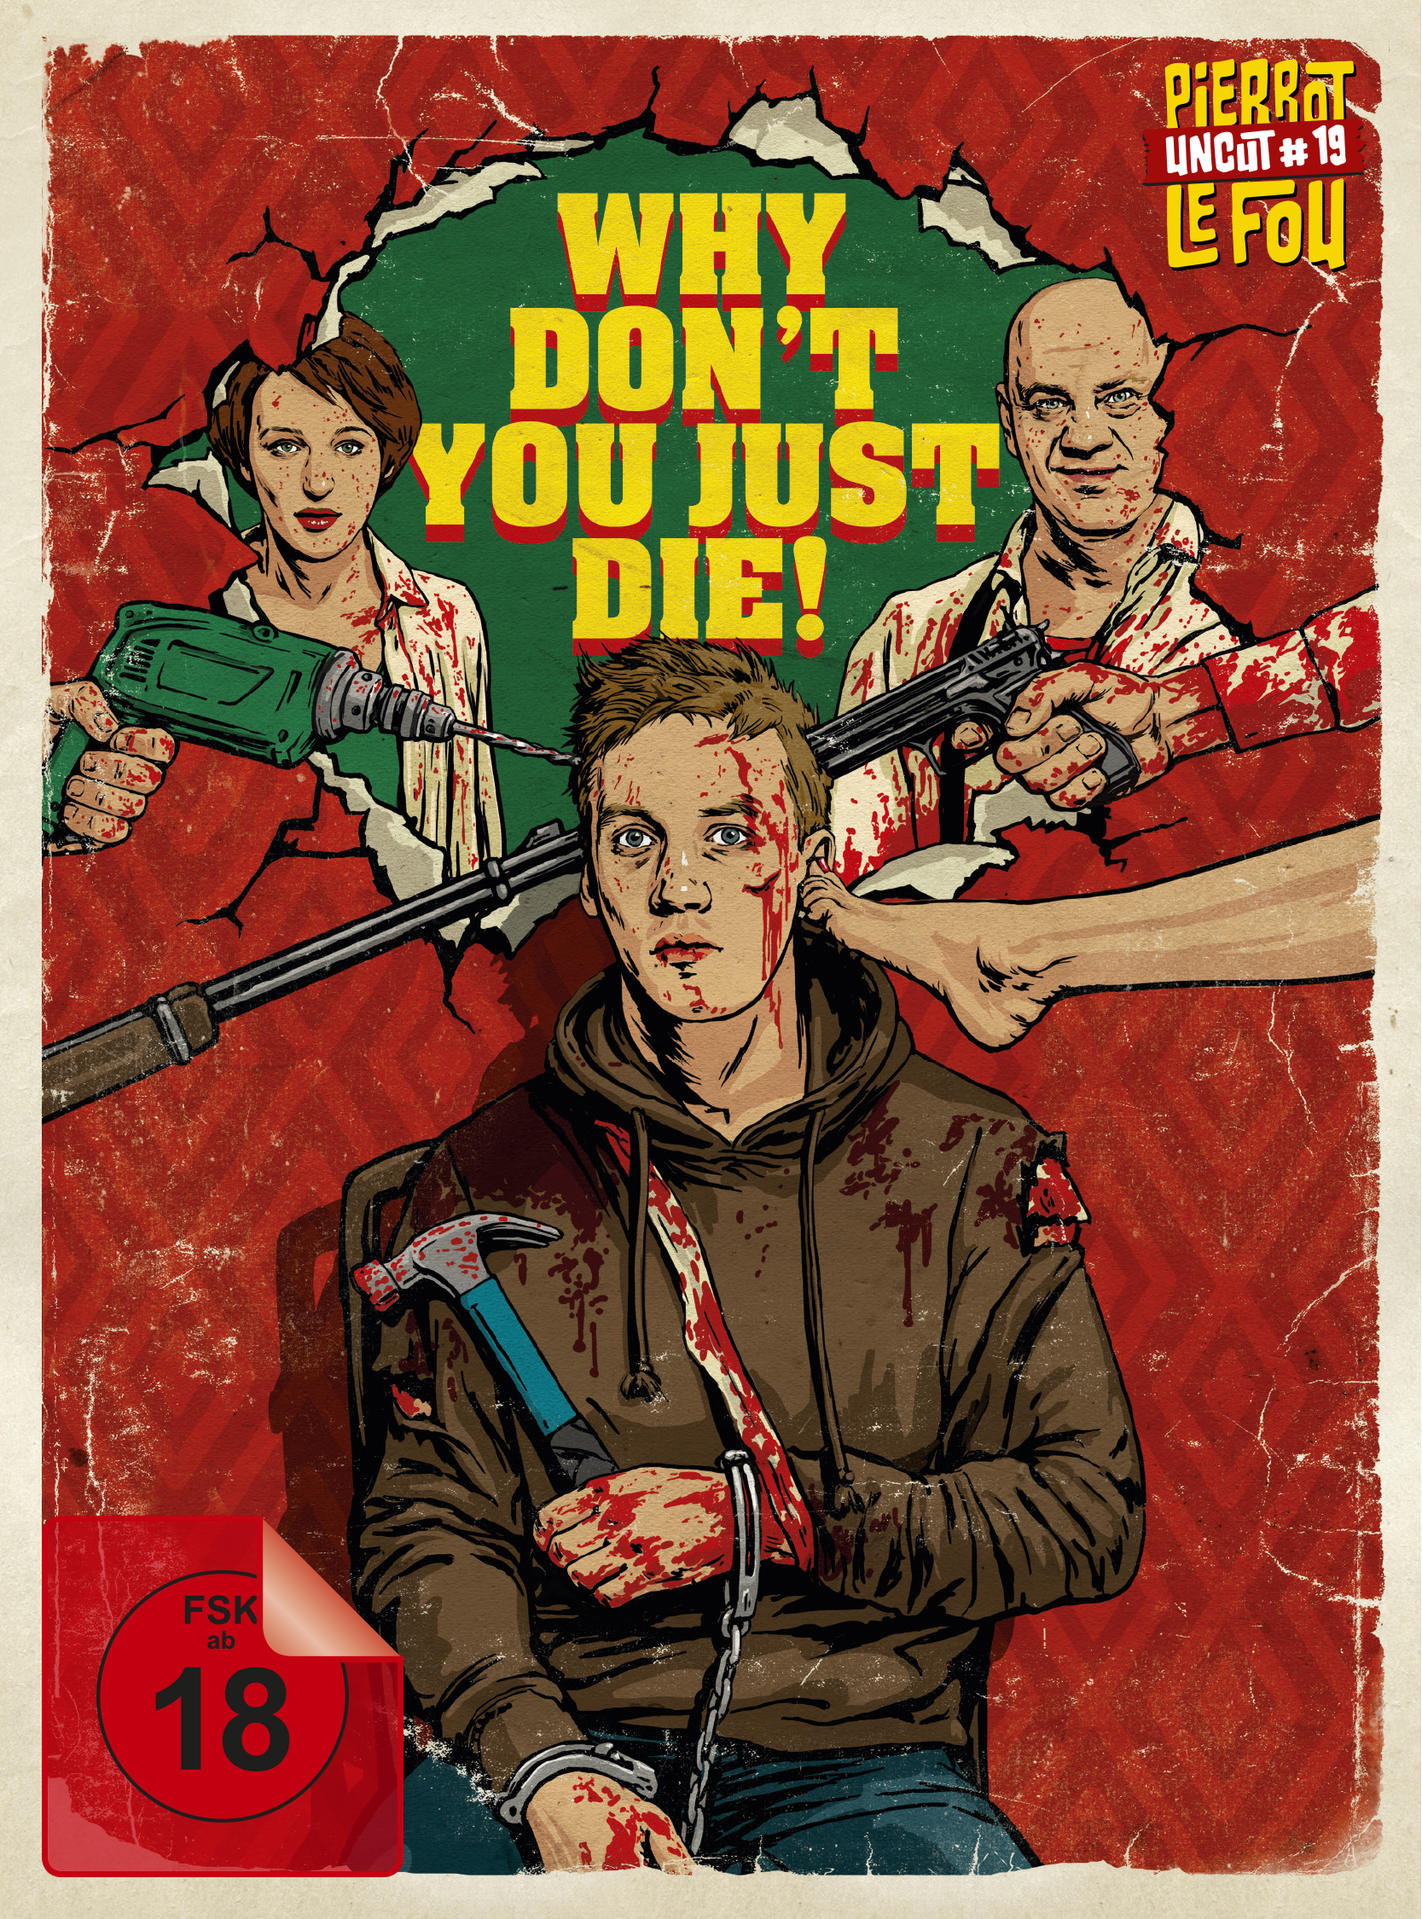 Mediabook Just You Die! Don\'t - Why LTD. (Uncut) Blu-ray